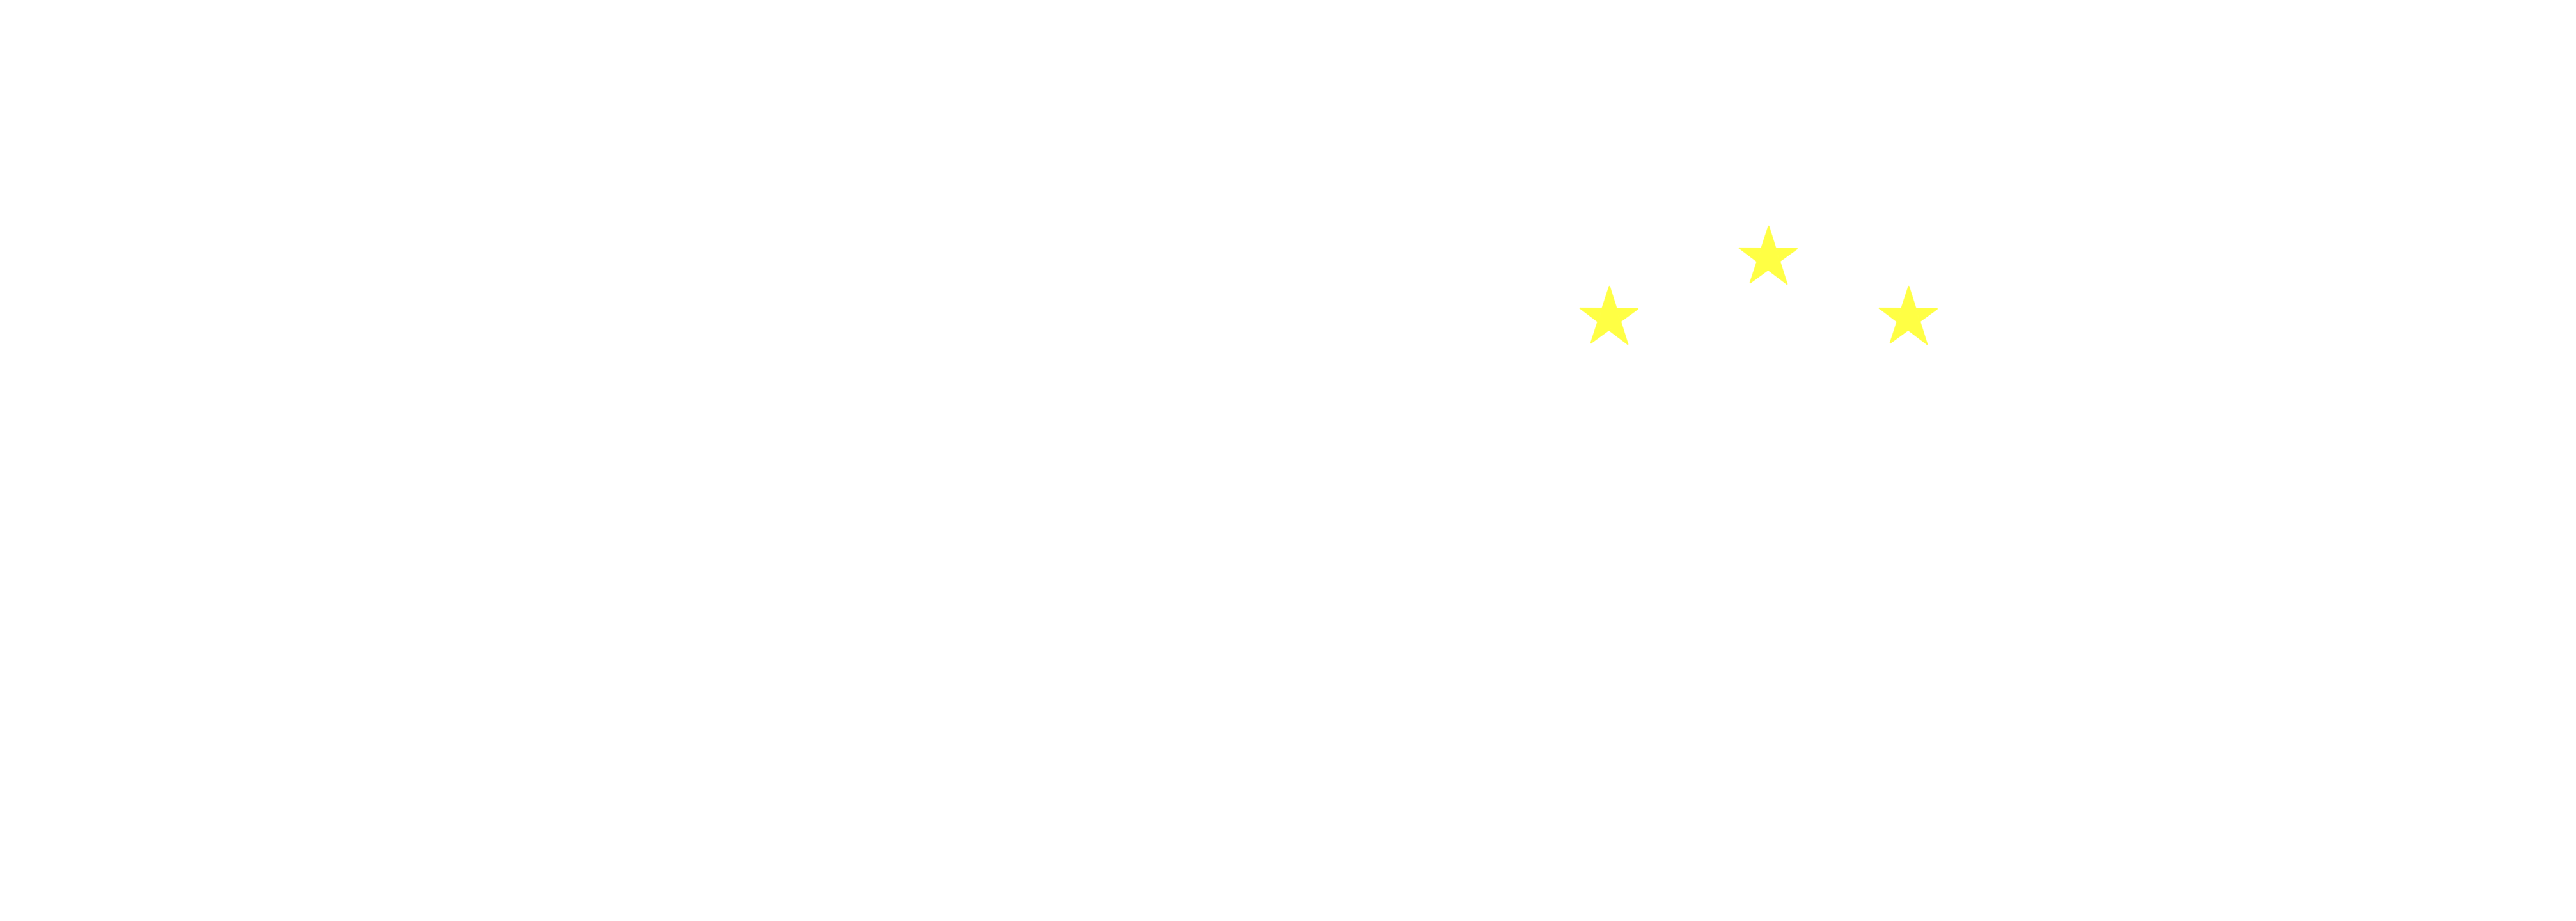 Yoshi Innovation Projekty Unijne